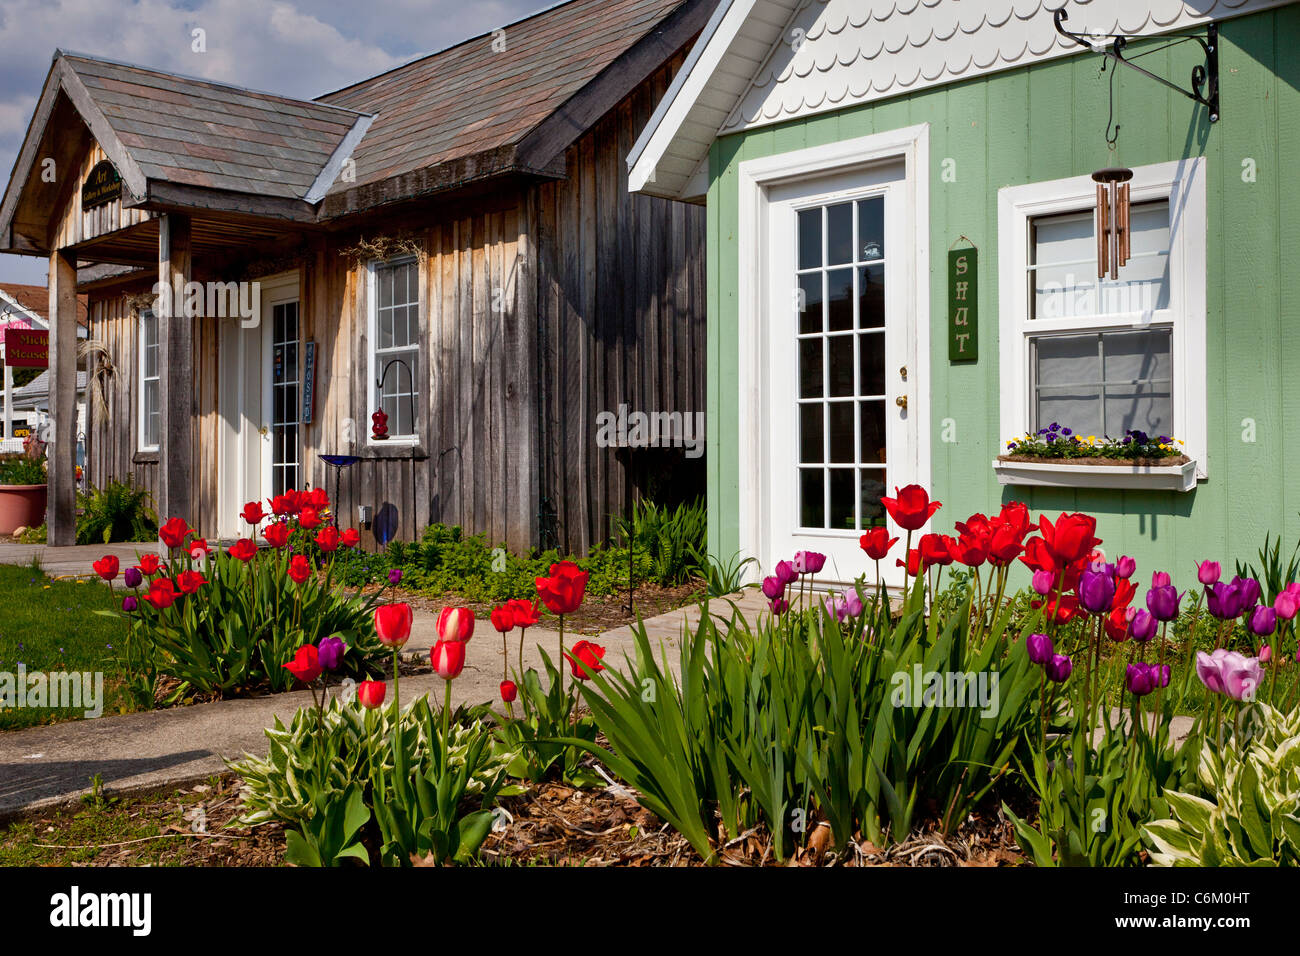 Kleine Hütten mit Tulpe Garten Anzeige in Shipshewana, Indiana, USA  Stockfotografie - Alamy